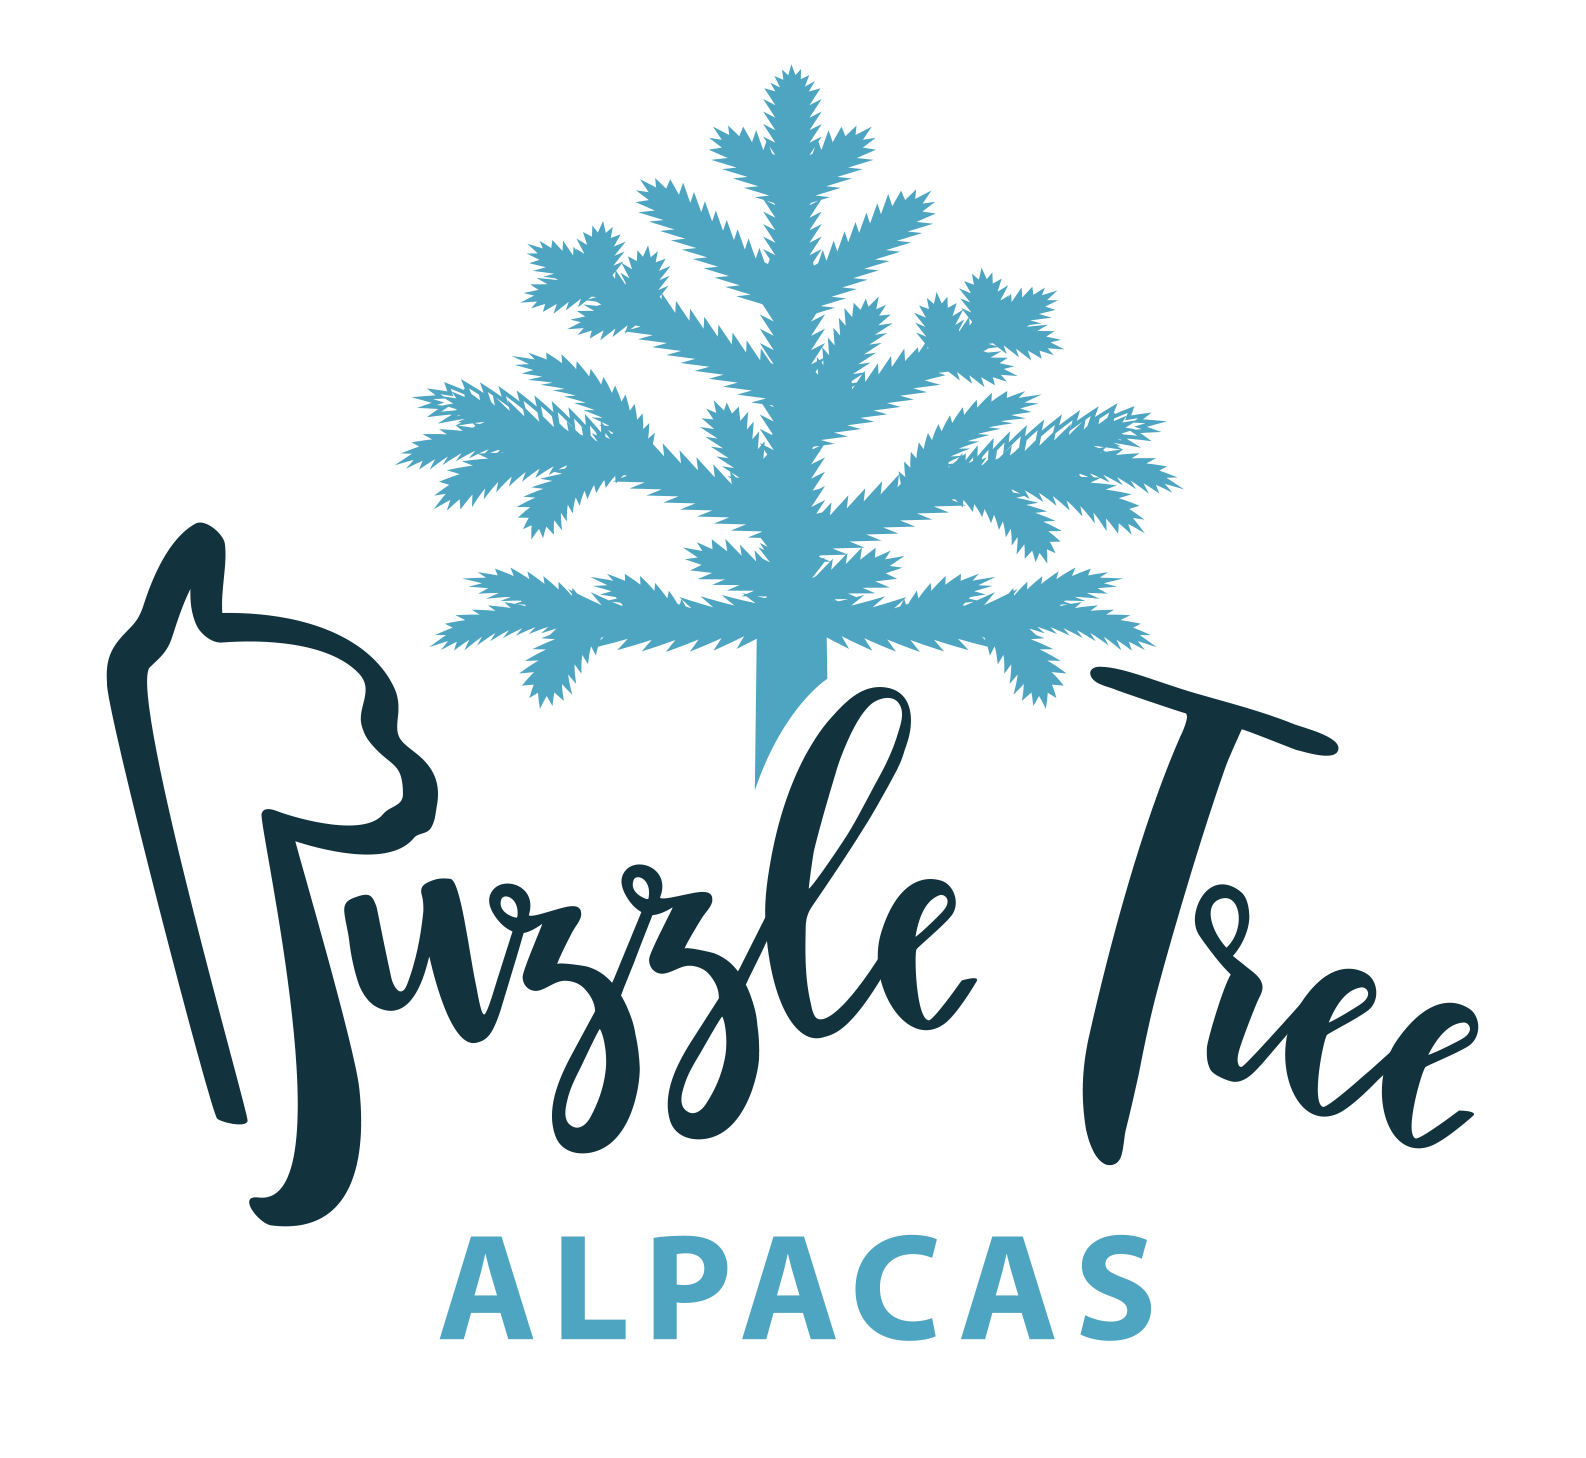 Puzzle Tree Alpacas - logo